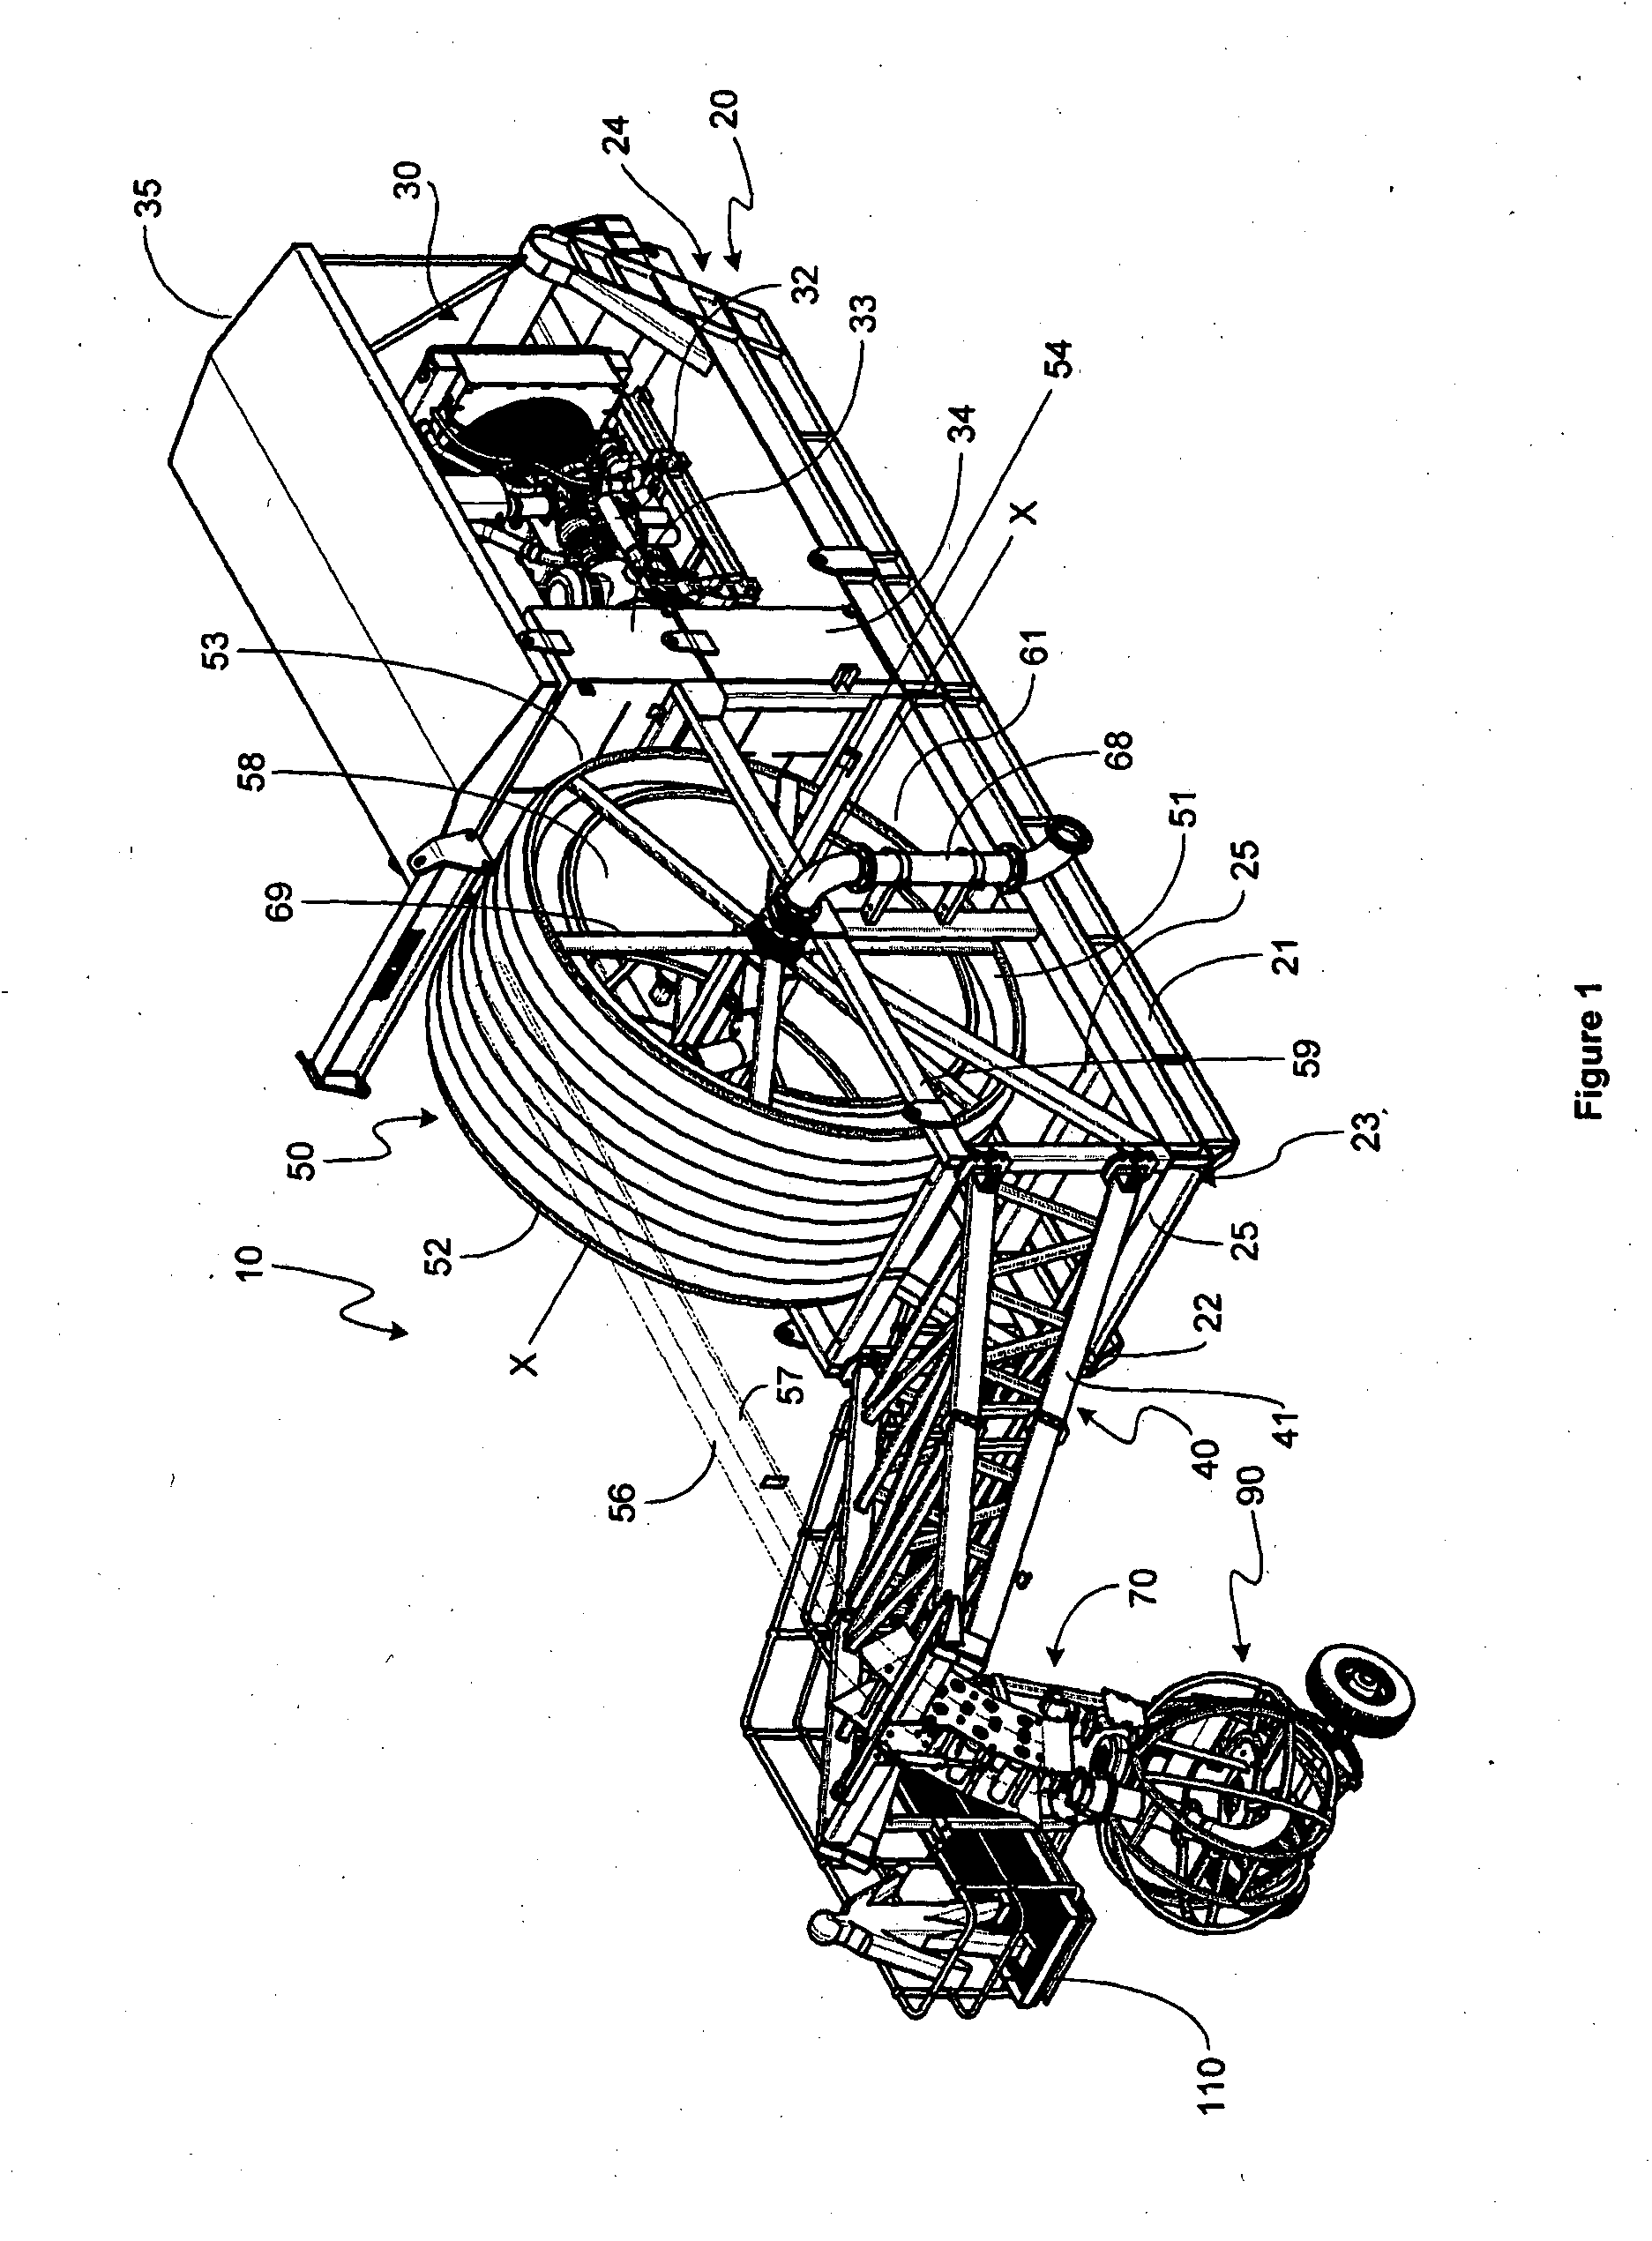 Pump apparatus